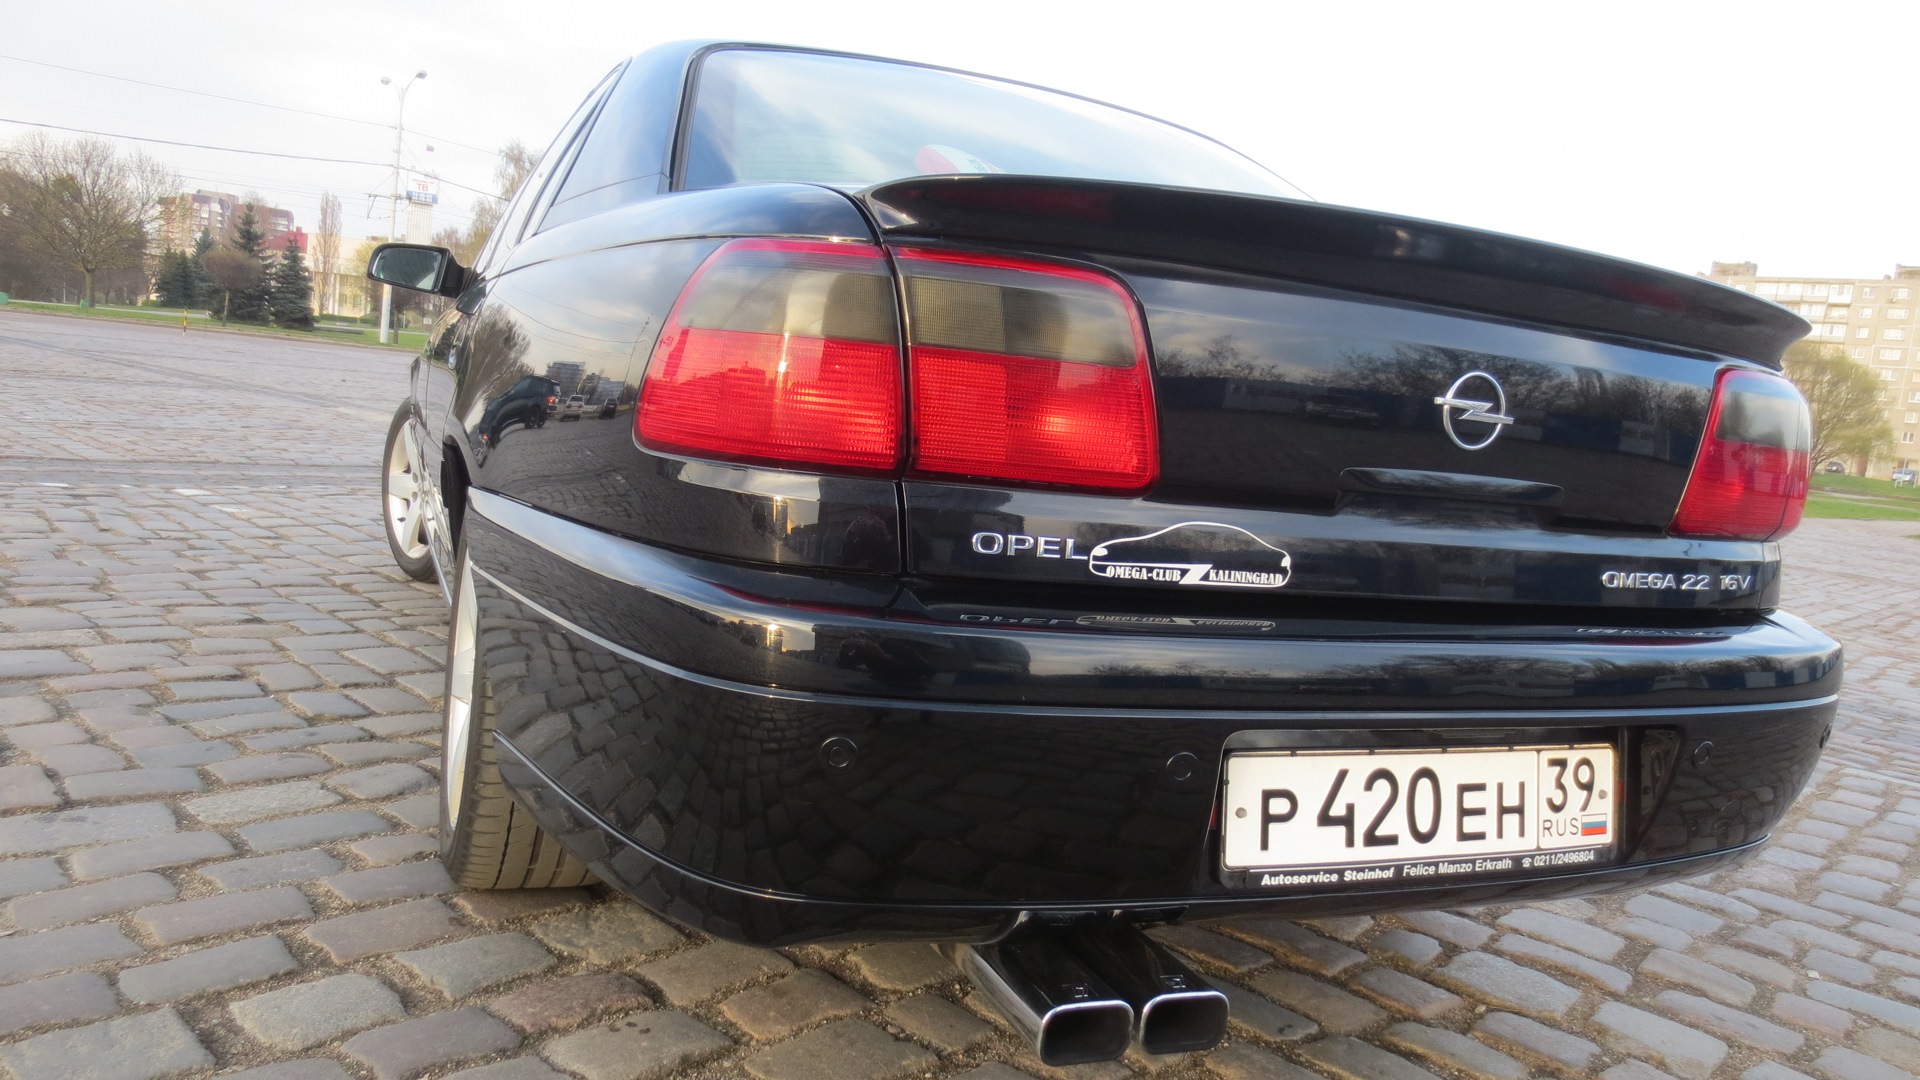 Бампер омега б. Opel Omega b 97 Spoiler. Opel Omega b спойлер. Спойлер Irmscher Opel Omega b. Omega b Irmscher спойлер.